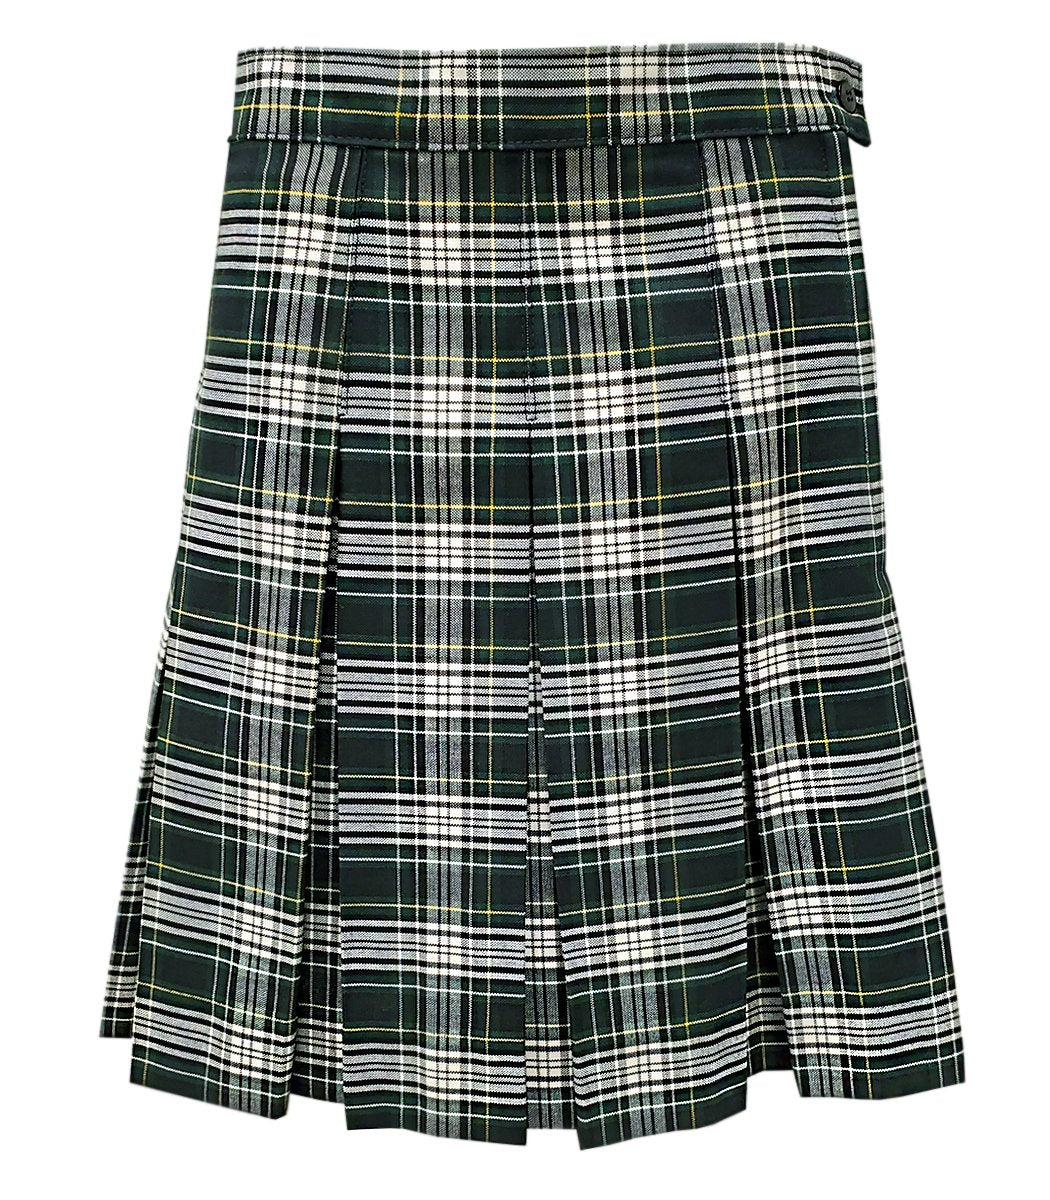 Skirt Model 43 - Polyester Plaids - 1203